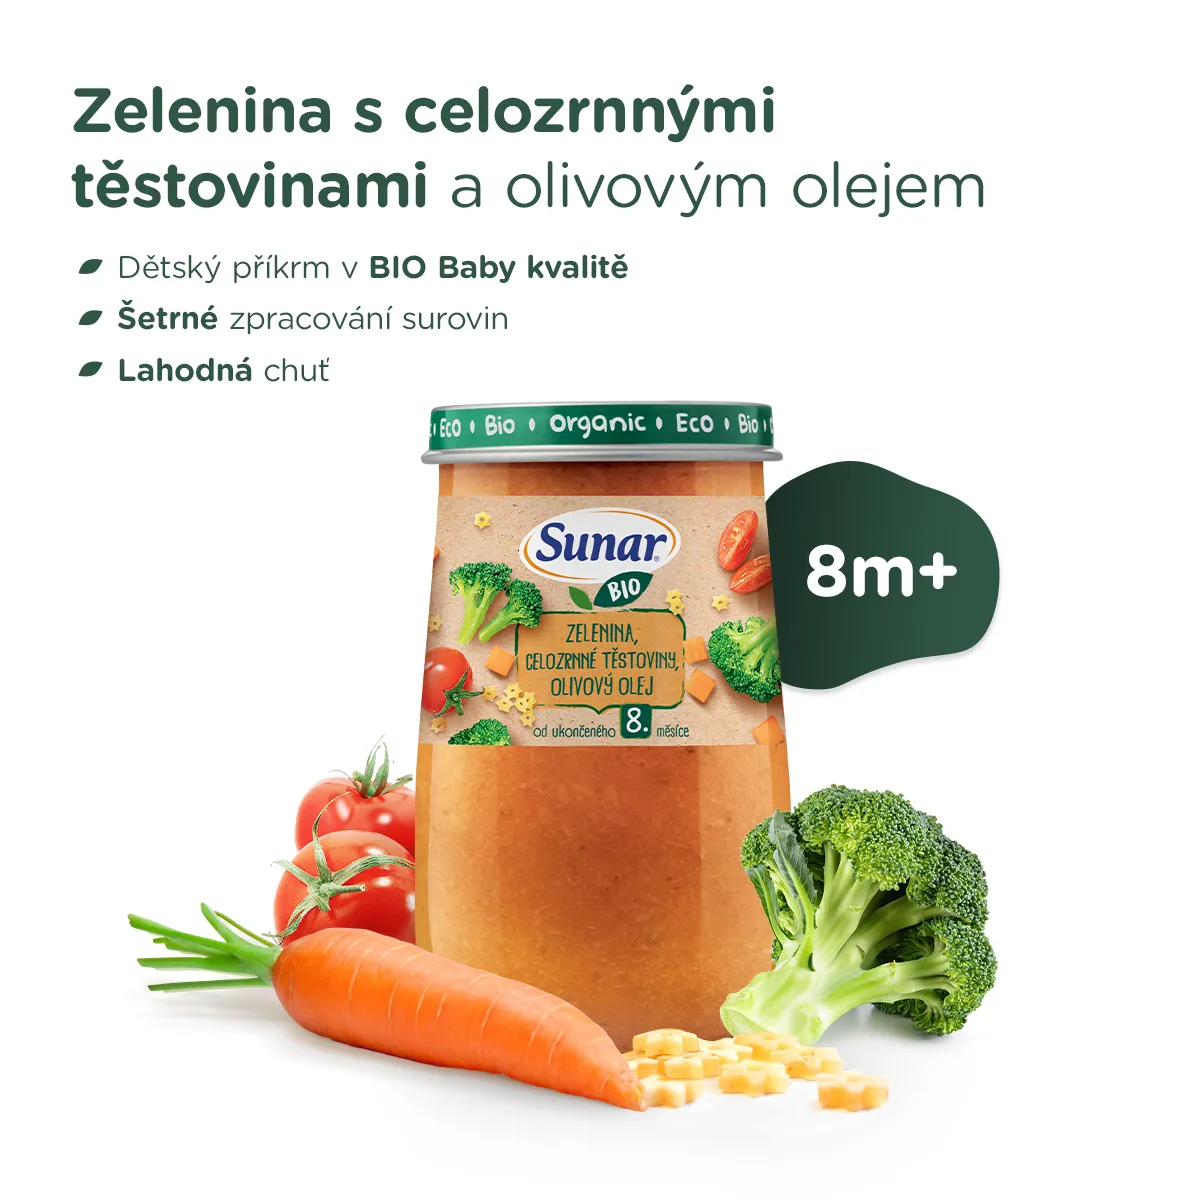 Sunar BIO Příkrm Zelenina, celozrnné těstoviny a olivový olej 8m+ 190 g